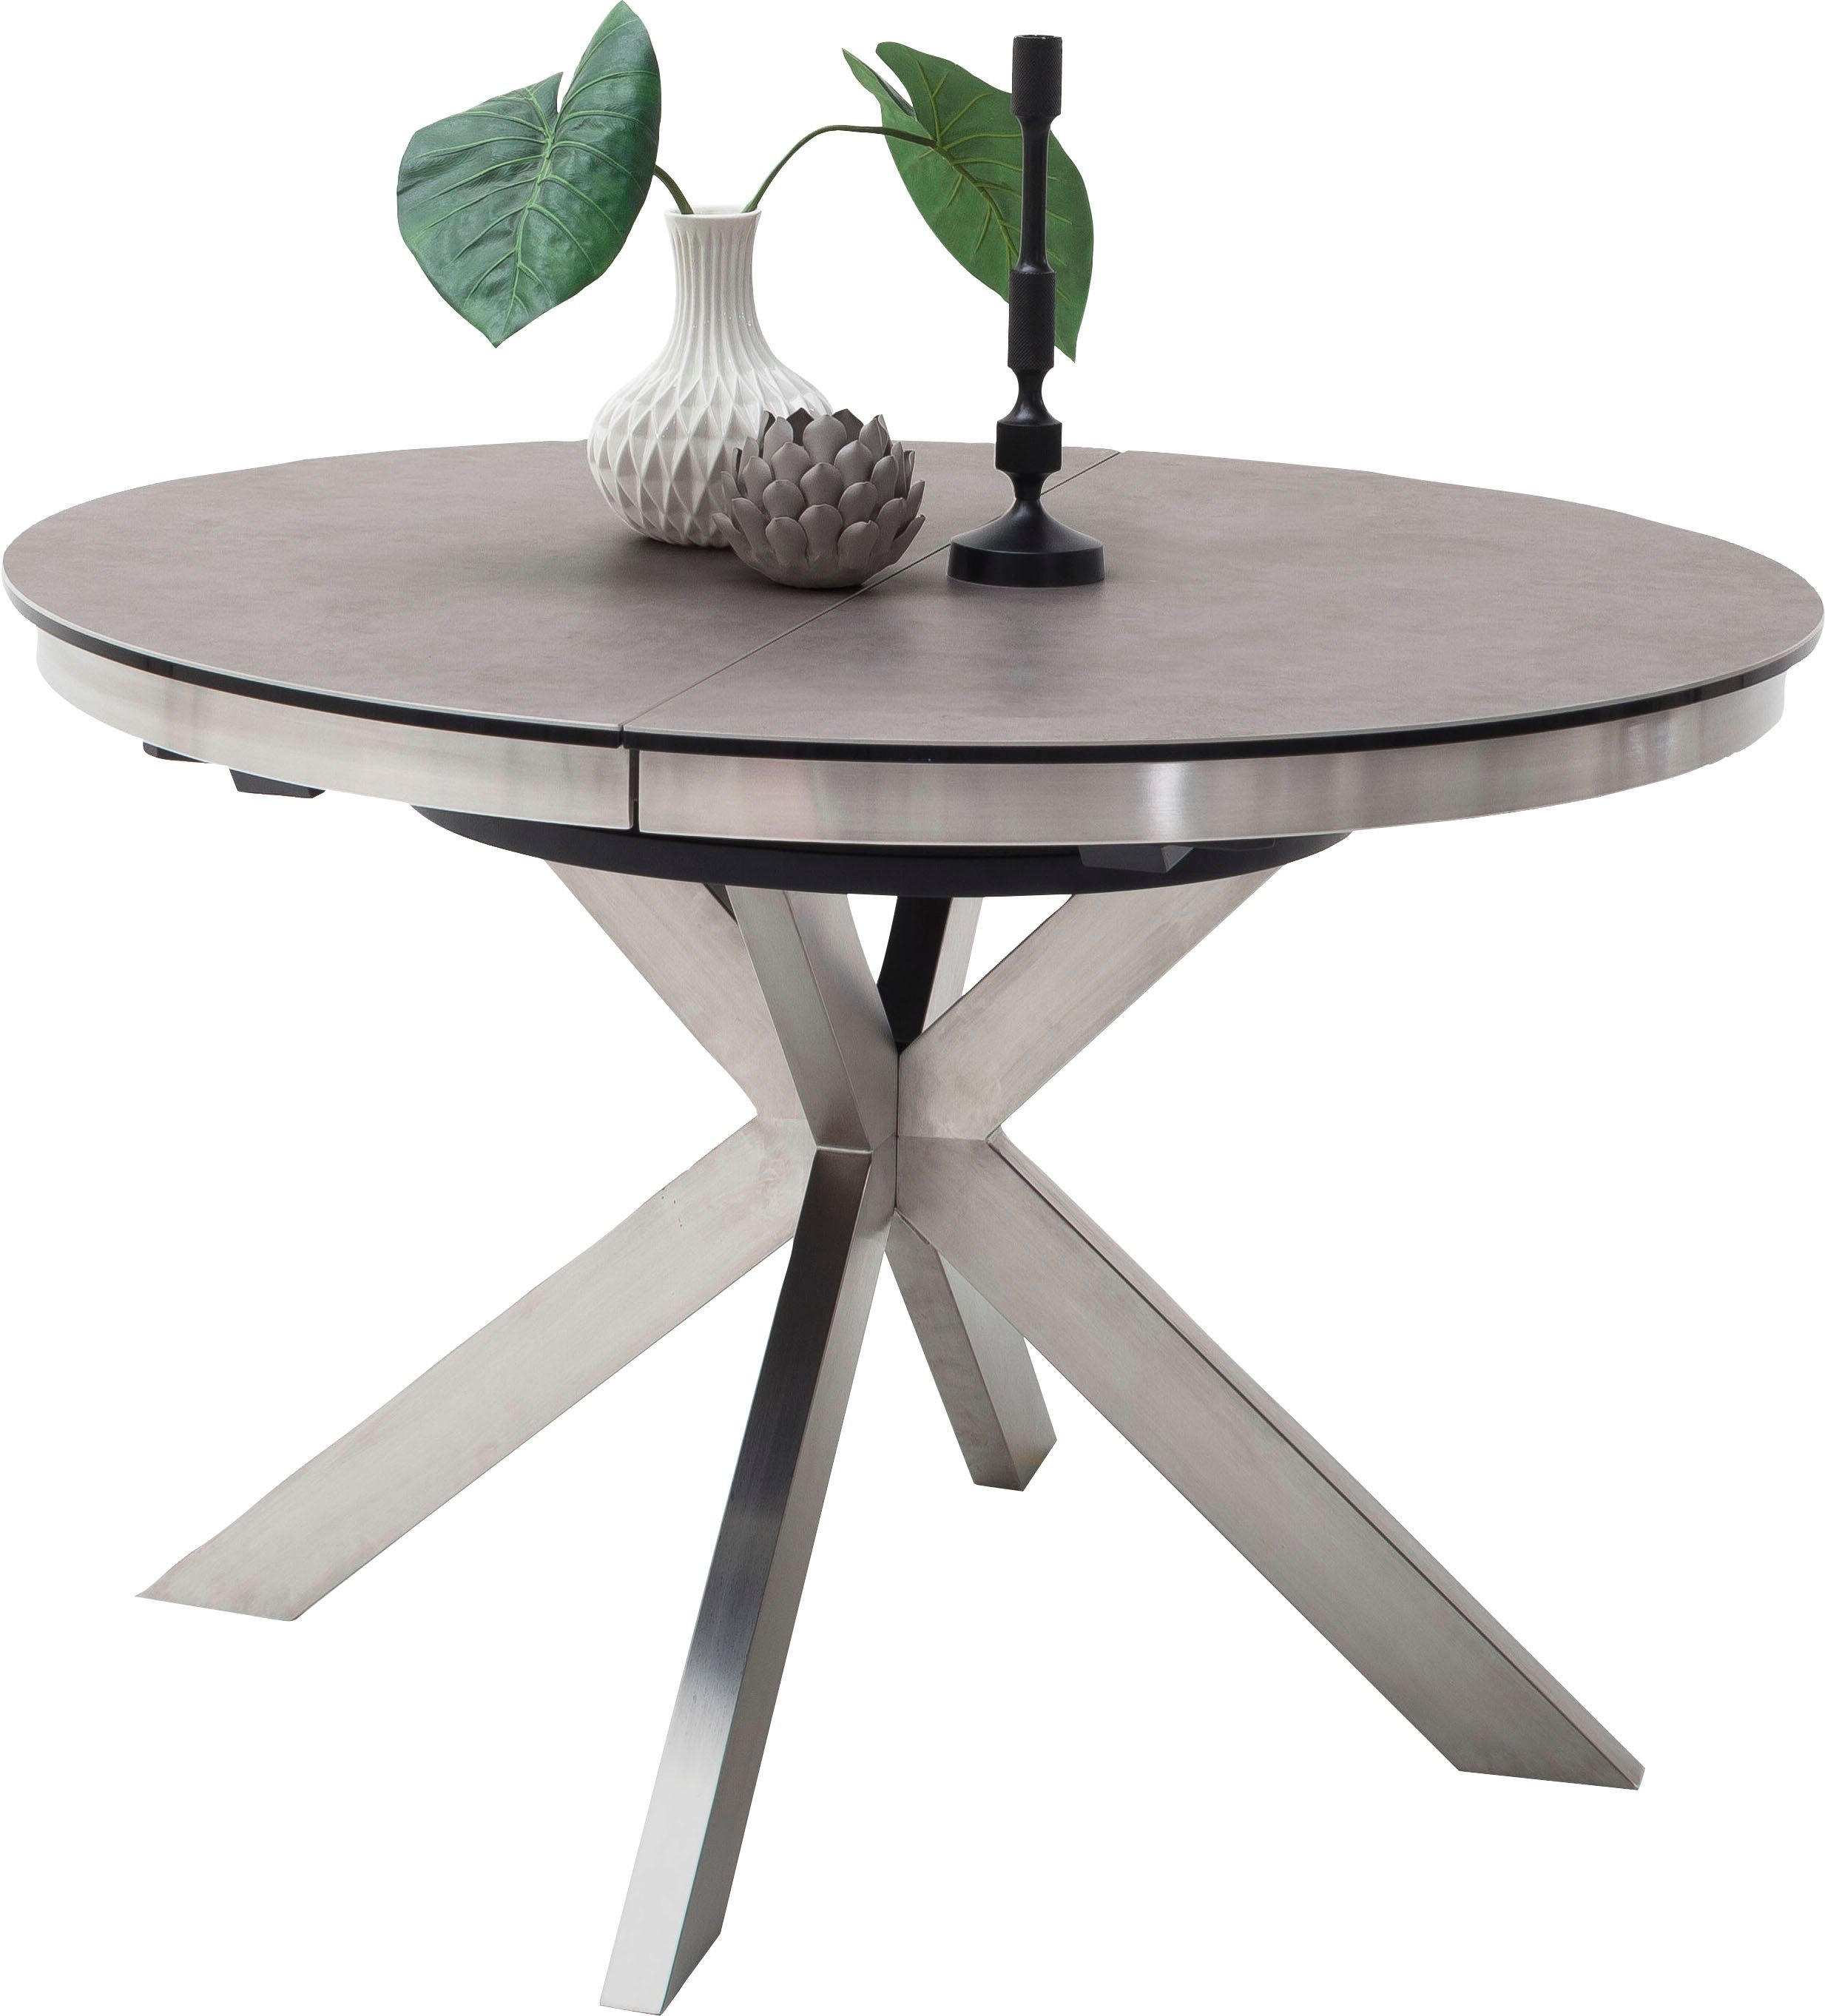 Esstisch Tisch rund ausziehbar, Synchronauszug MCA Edelstahl Glas furniture Keramik mit Winnipeg,